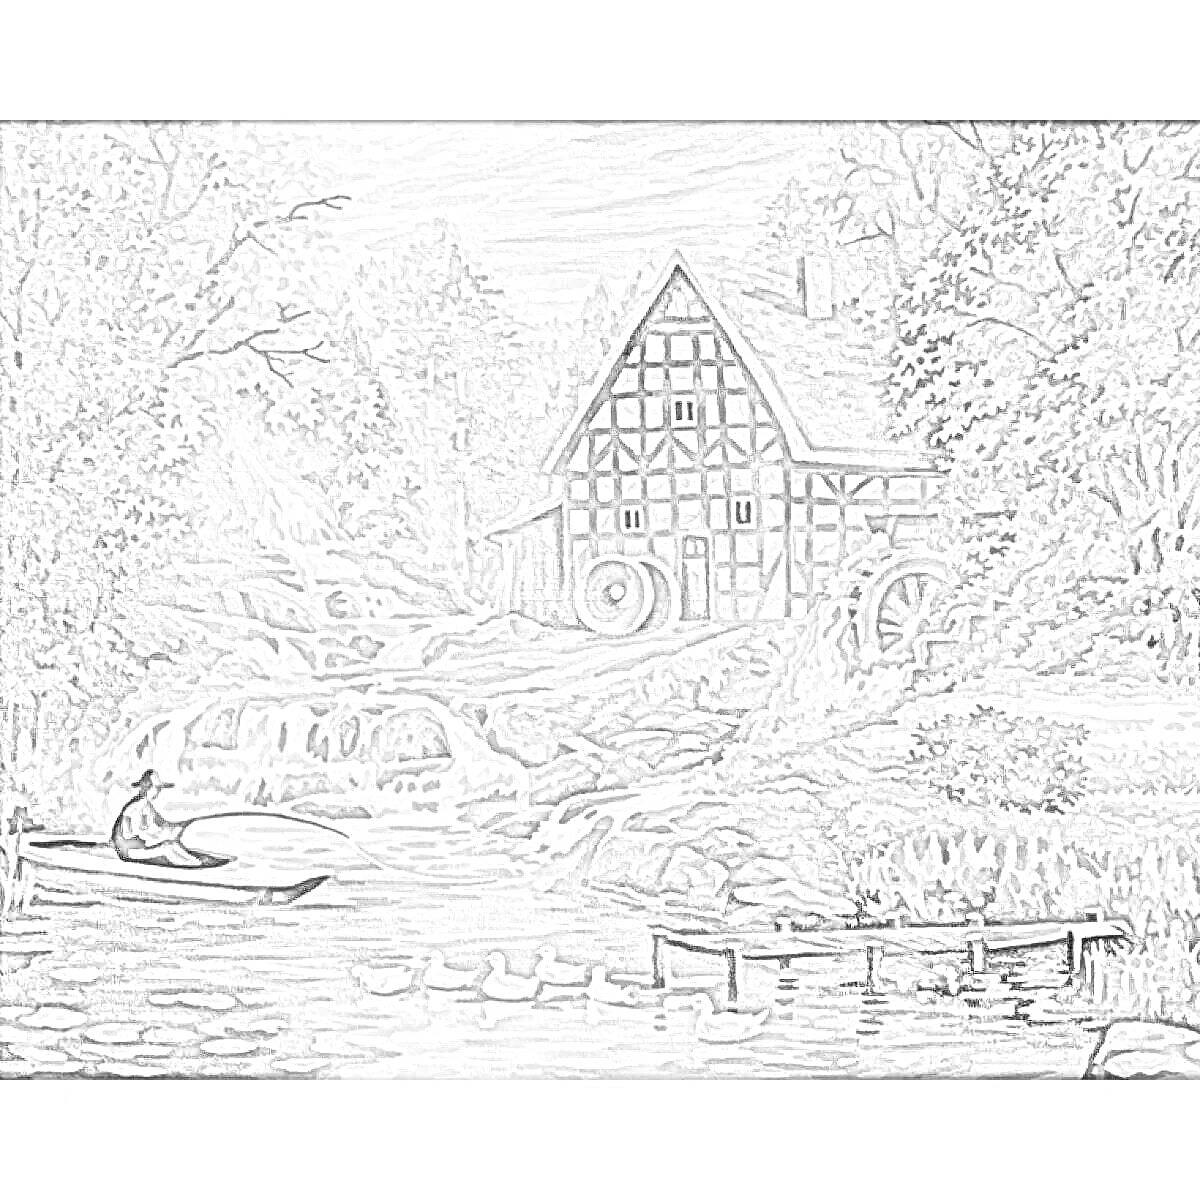 Раскраска Пейзаж с мельницей, домом, лодкой с лодочником, утками на реке, каскадным водопадом и лесом